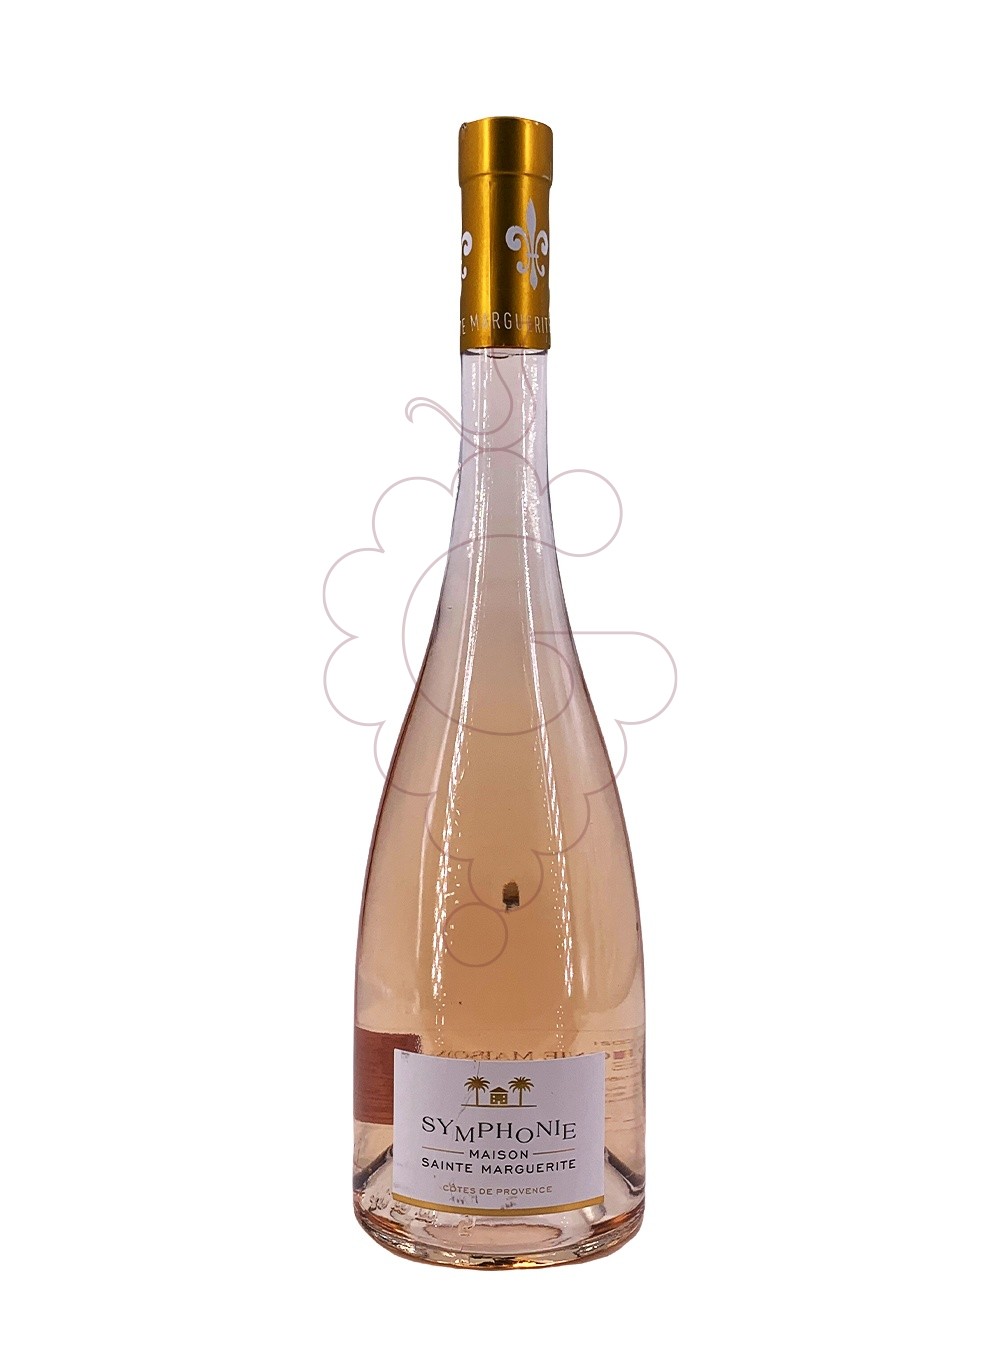 Photo Symphonie Maison Sainte Marguerite rosé wine